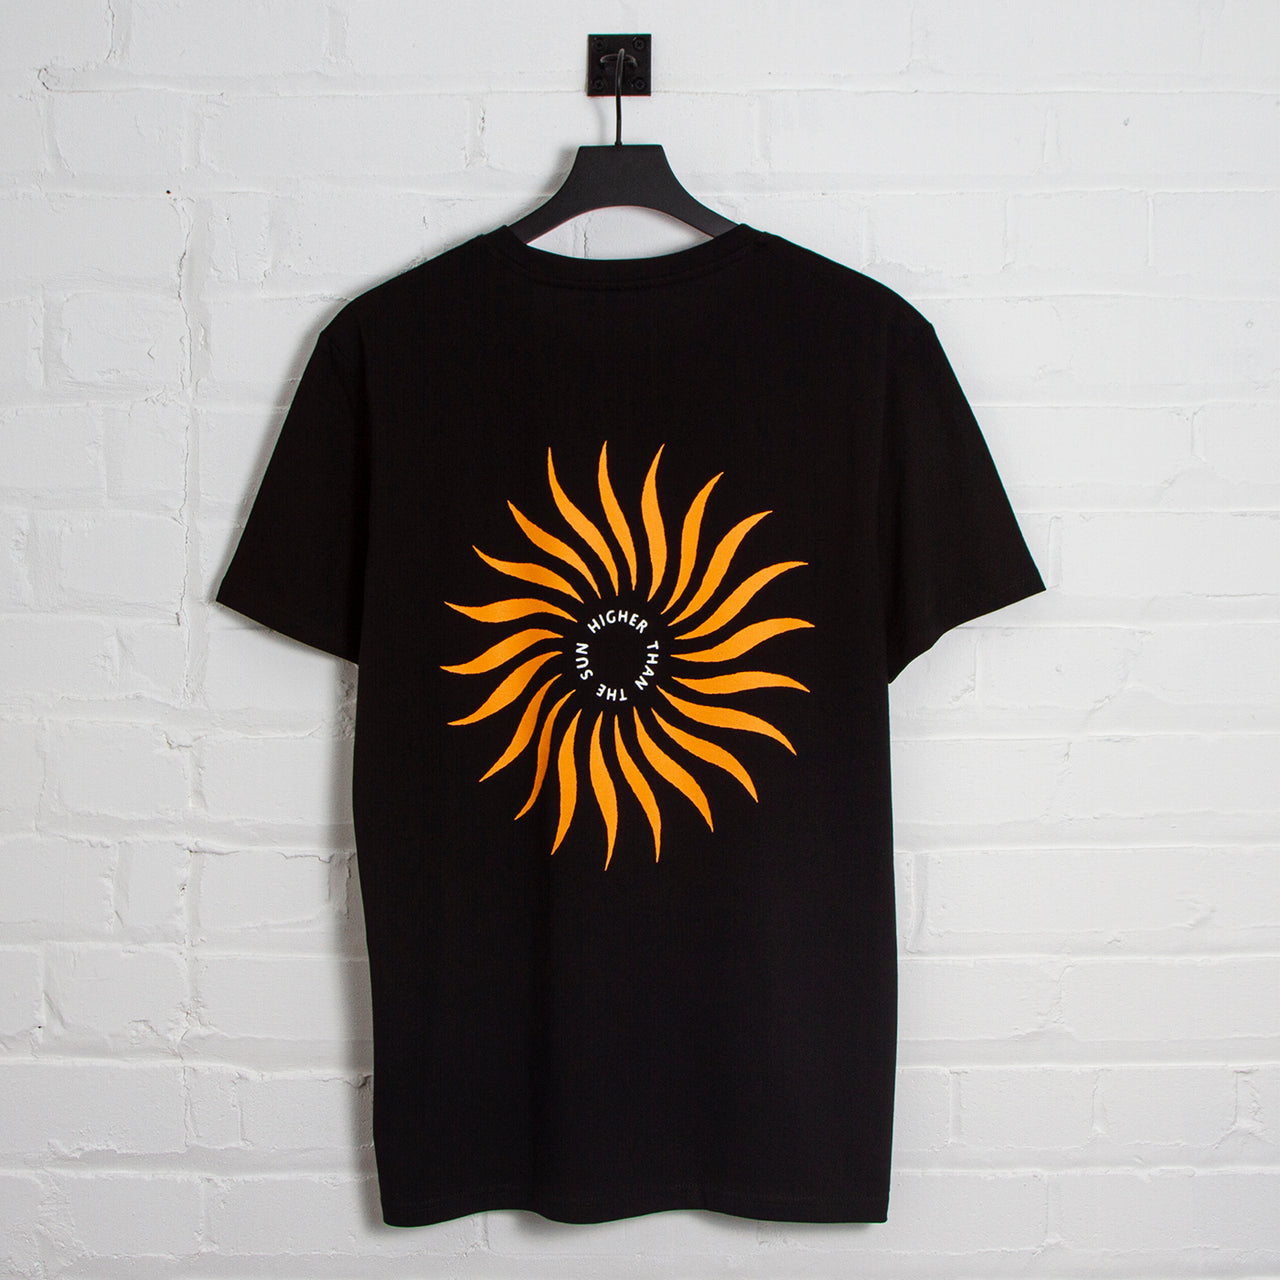 Higher Than The Sun Back Print - Tshirt - Black